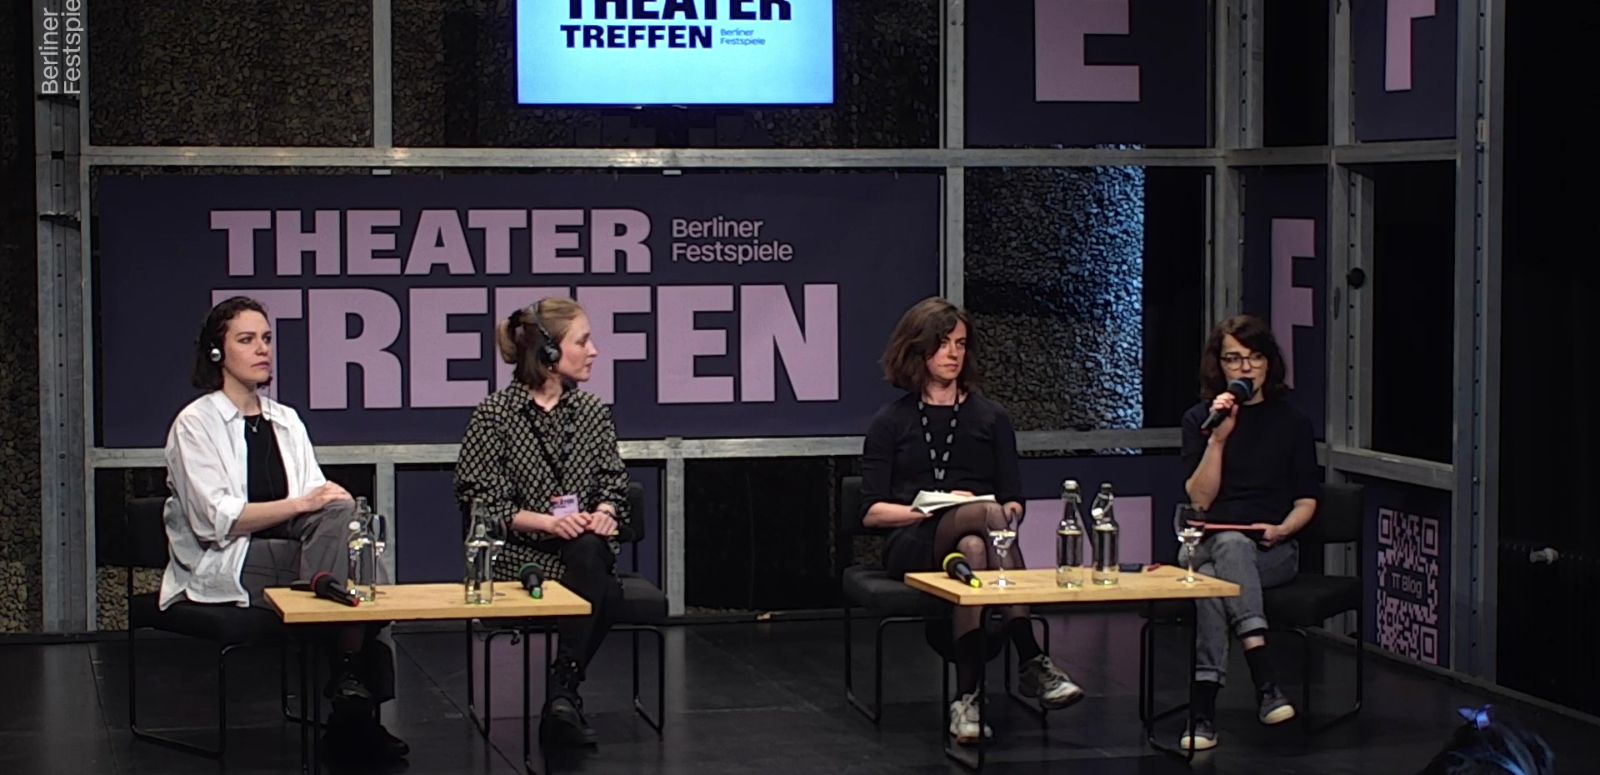 Vier Frauen sitzen an zwei kleinen Tischen, hinter ihnen der Schriftzug Theatertreffen. Die Frau ganz rechts hat ein Mikrofon in der Hand.